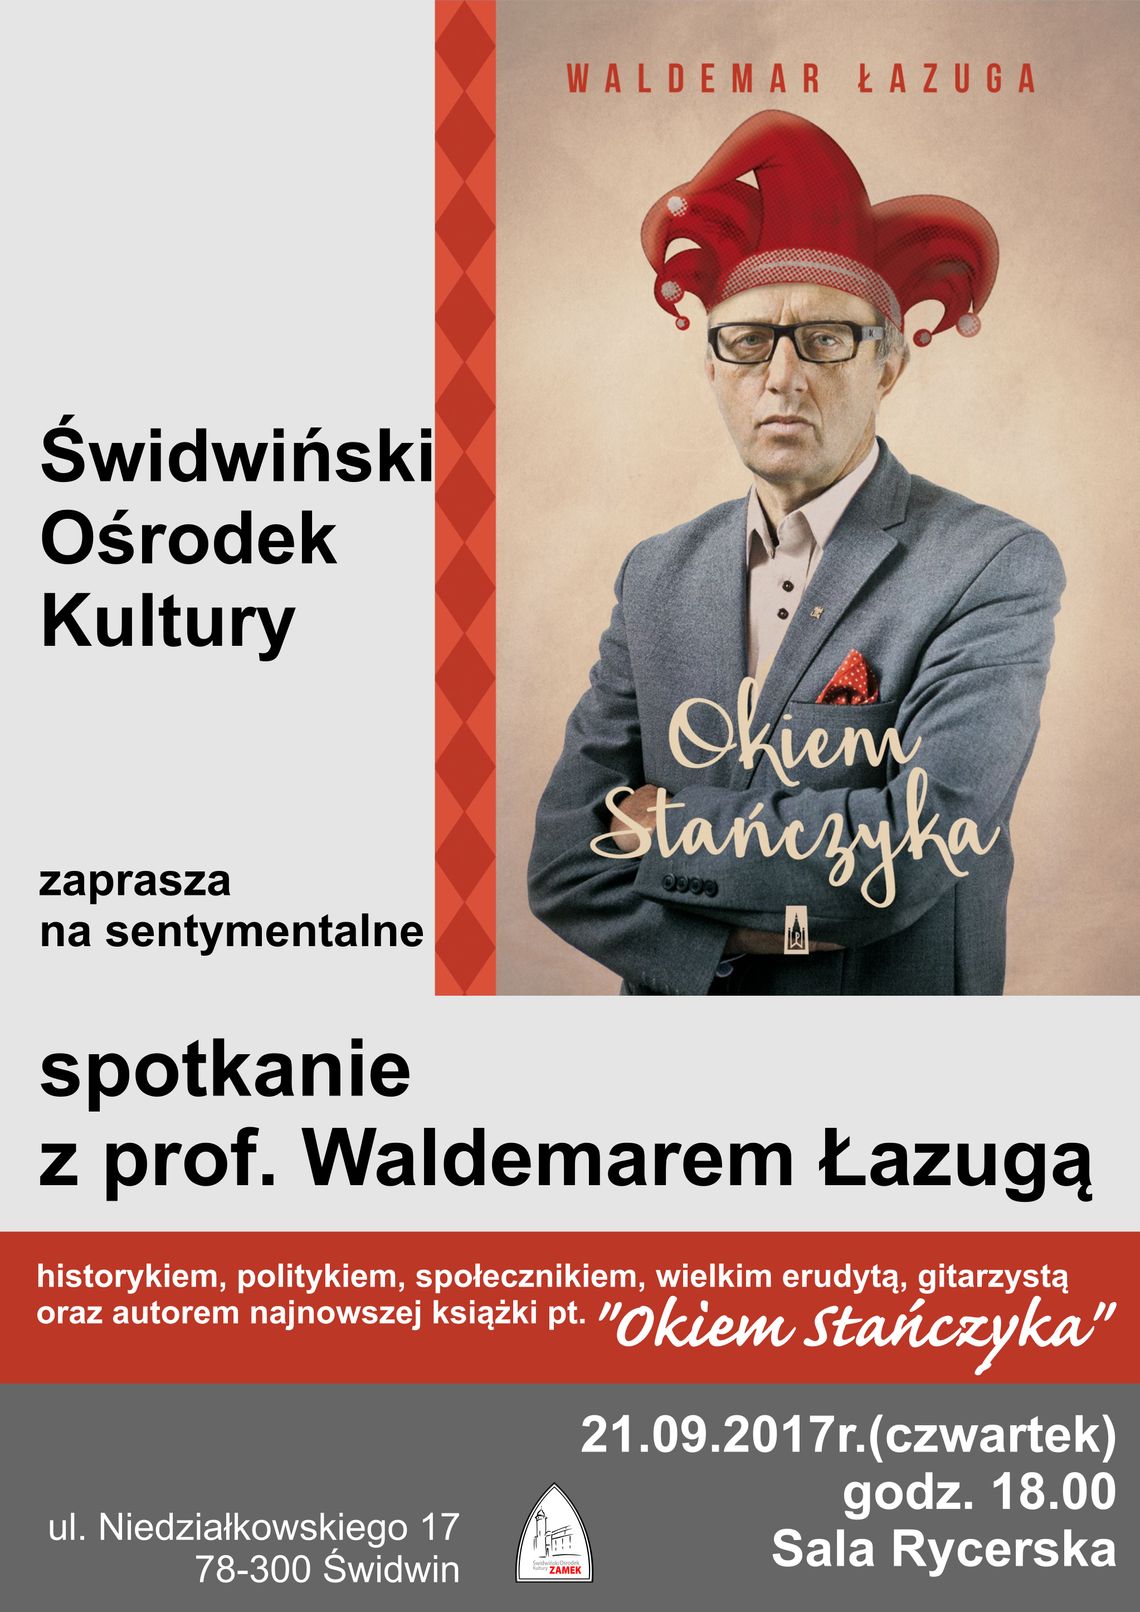 Spotkanie z prof. Waldemarem Łazugą